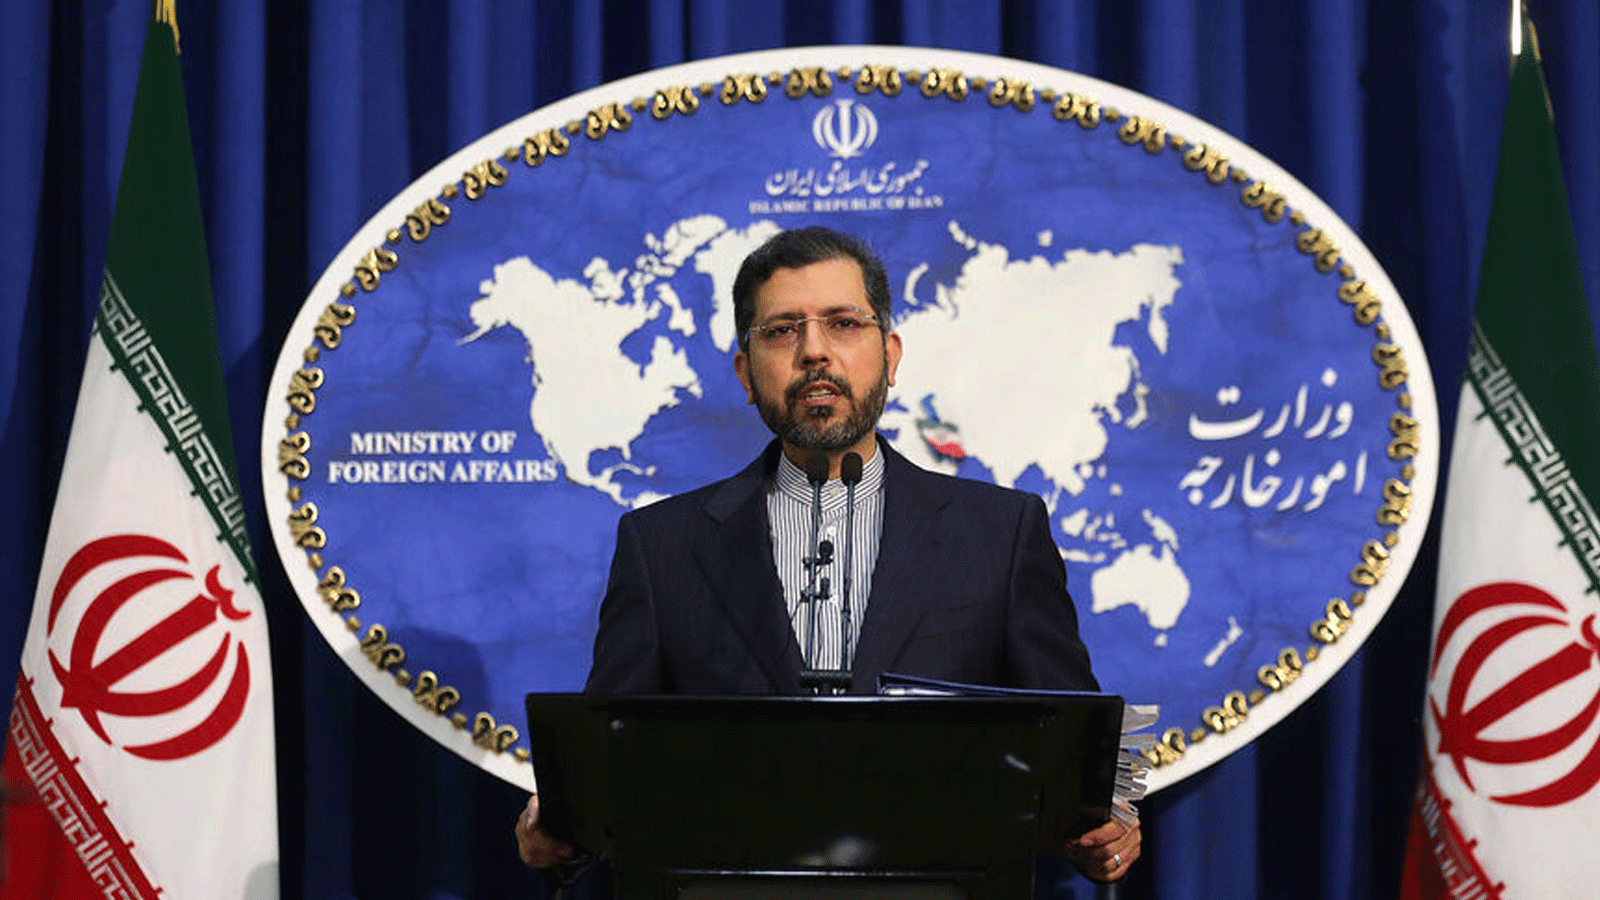 المتحدث باسم وزارة الخارجية الإيرانية سعيد خطيب زاده خلال مؤتمر صحفي في طهران في 22 شباط/ فبراير 2021. 